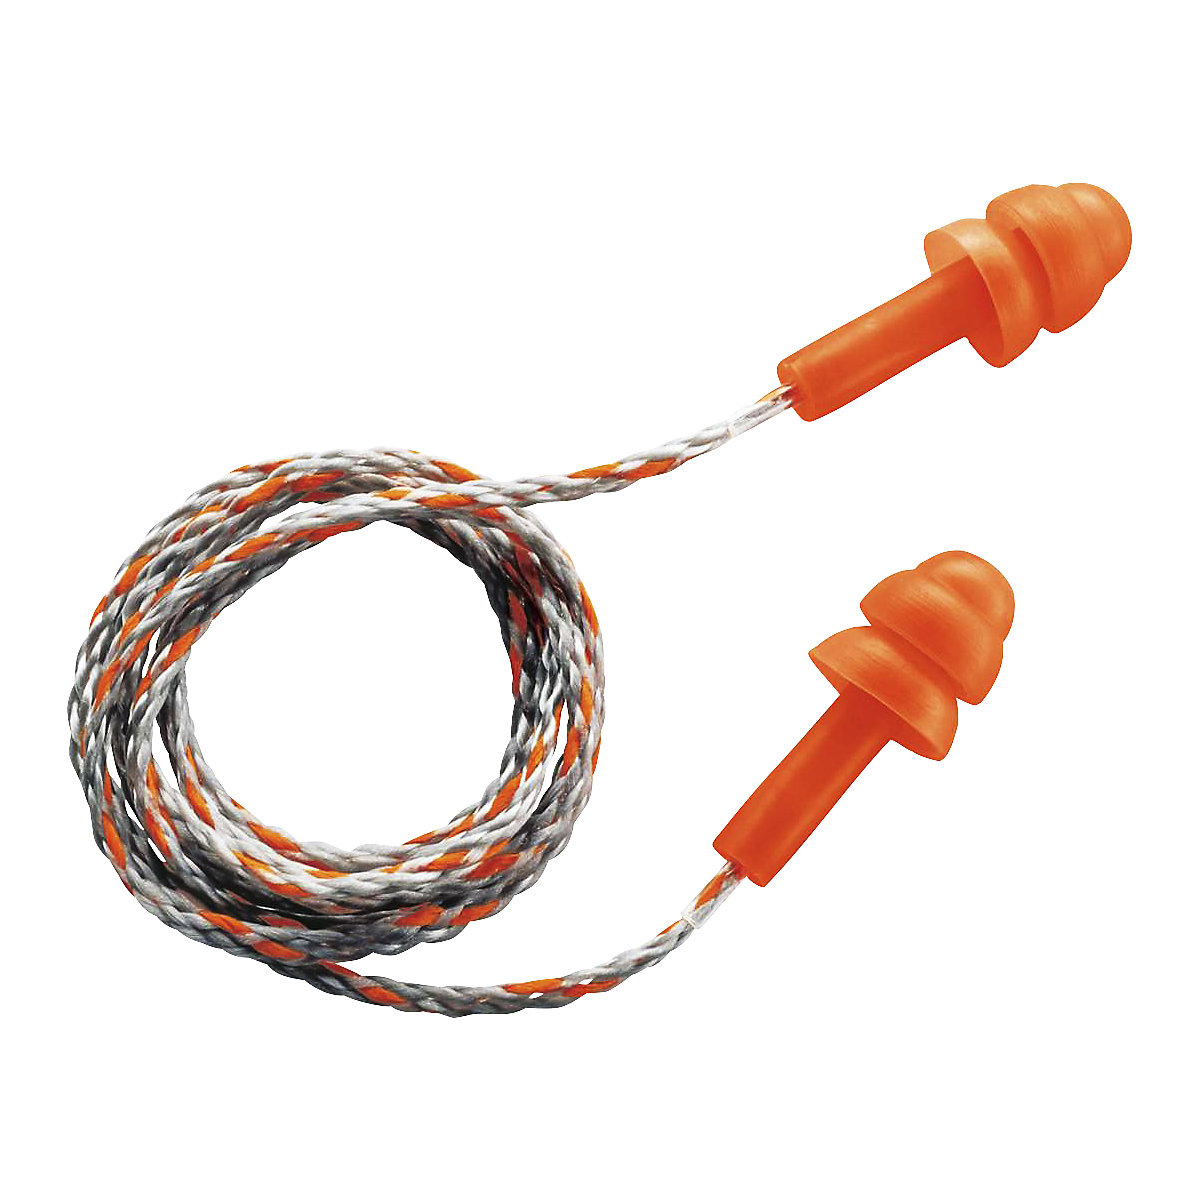 WHISPER 2111201 earplug with cord in mini box – Uvex